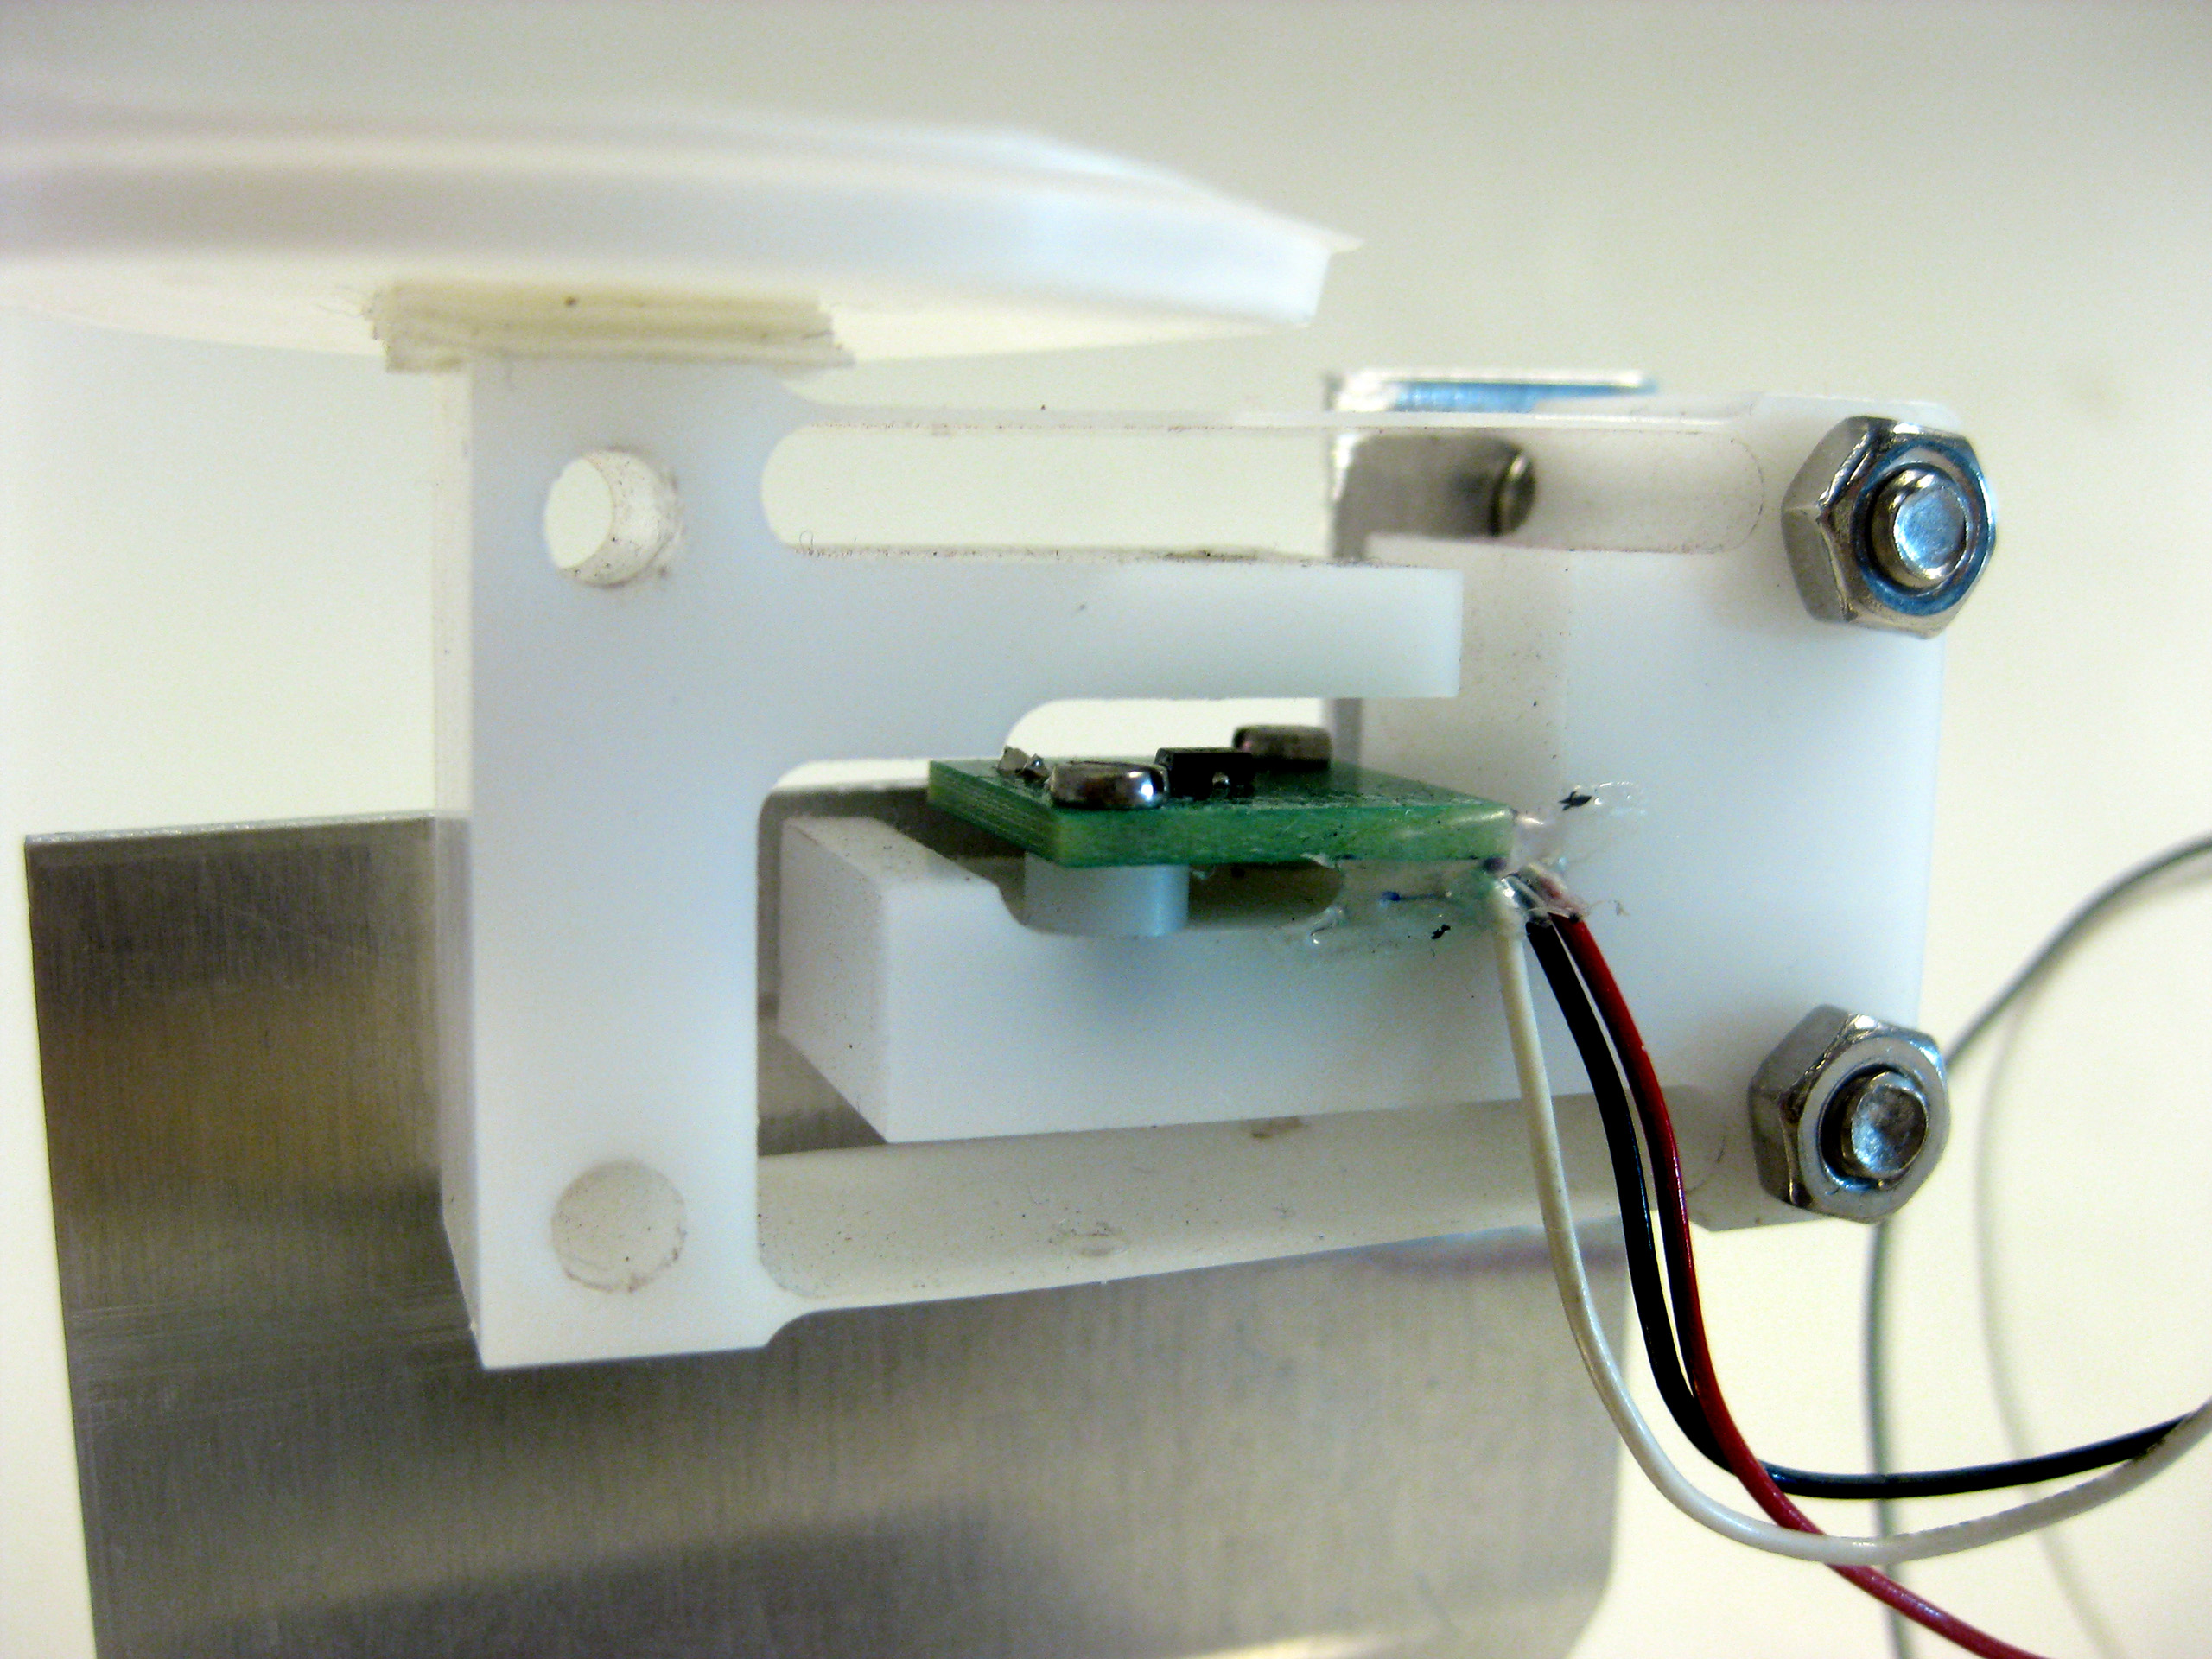 CNC - gefreesd prototype van een gewichtssensor uit POM met geïntegreerde parallelle bladveer - constructie. Analoge hall sensor met enkele magneet en beperkte uitslag.